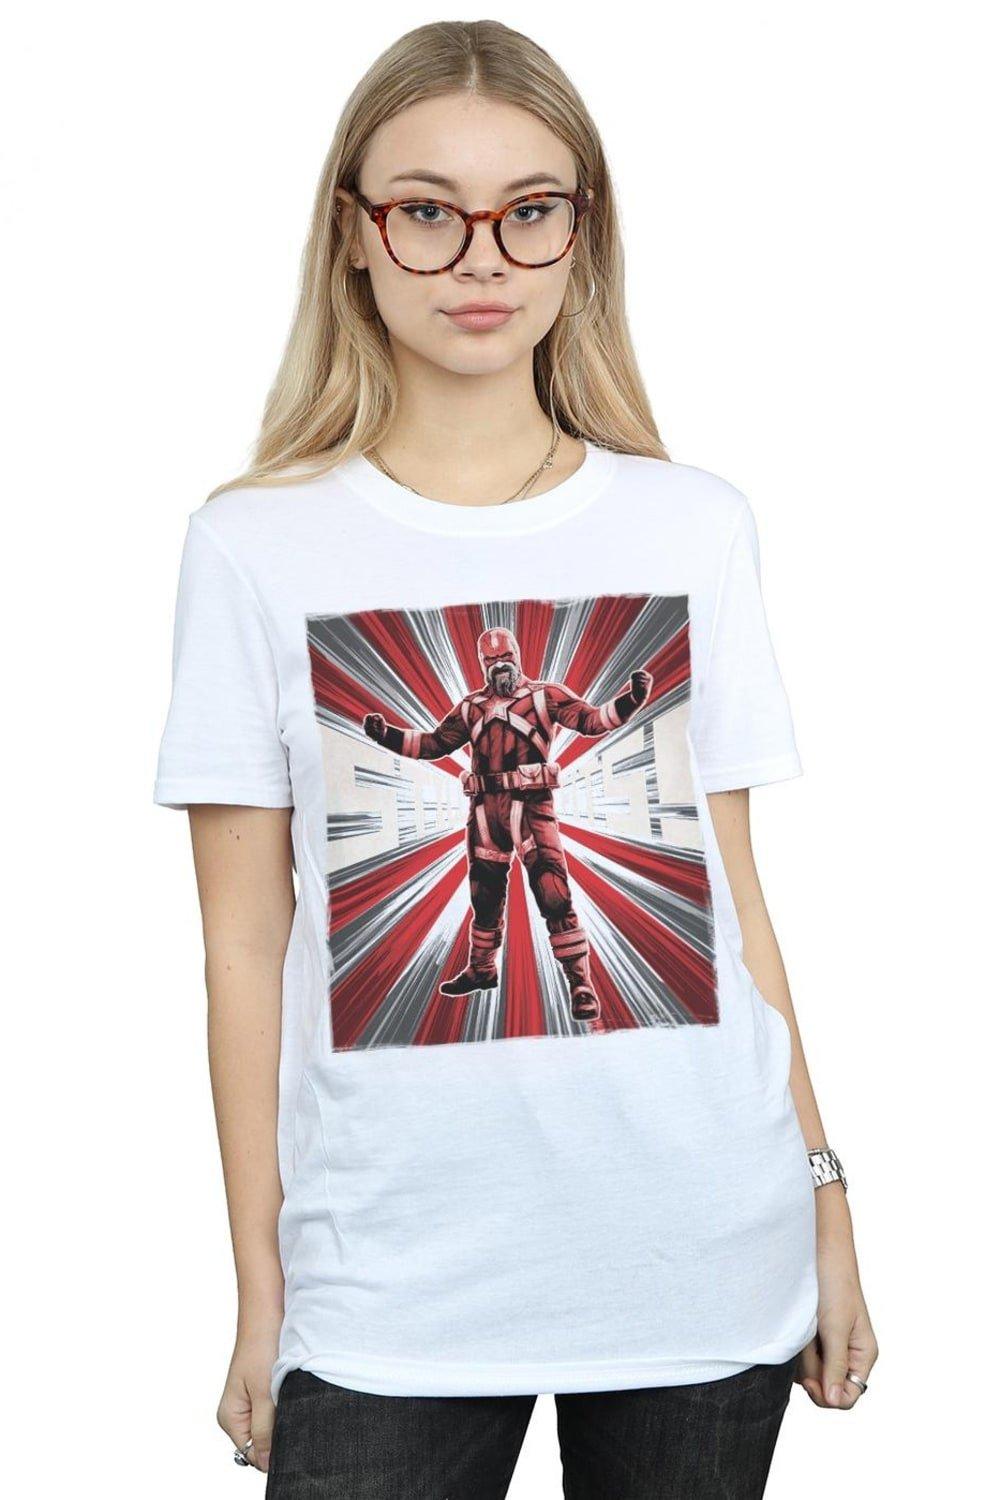 Black Widow Movie Red Sparrow Fits Cotton Boyfriend T-Shirt